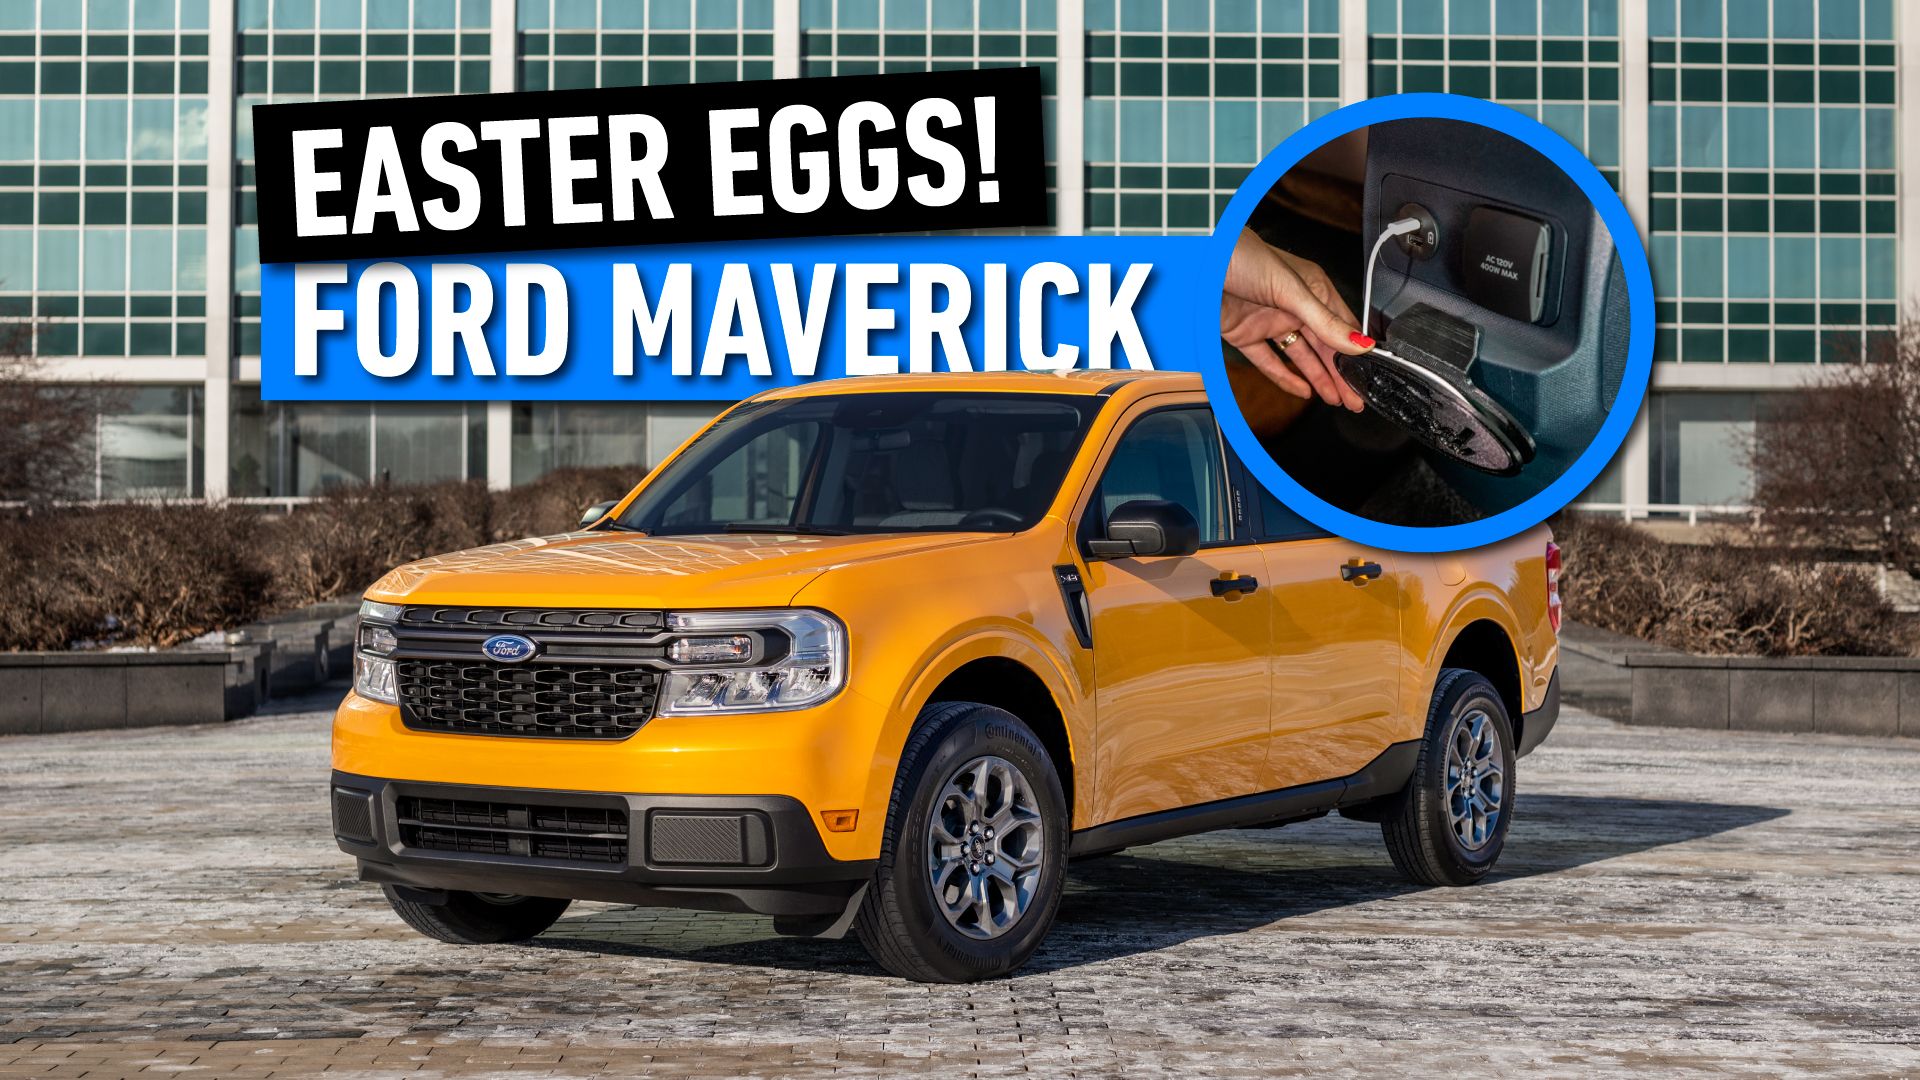 Ford Maverick Easter Eggs